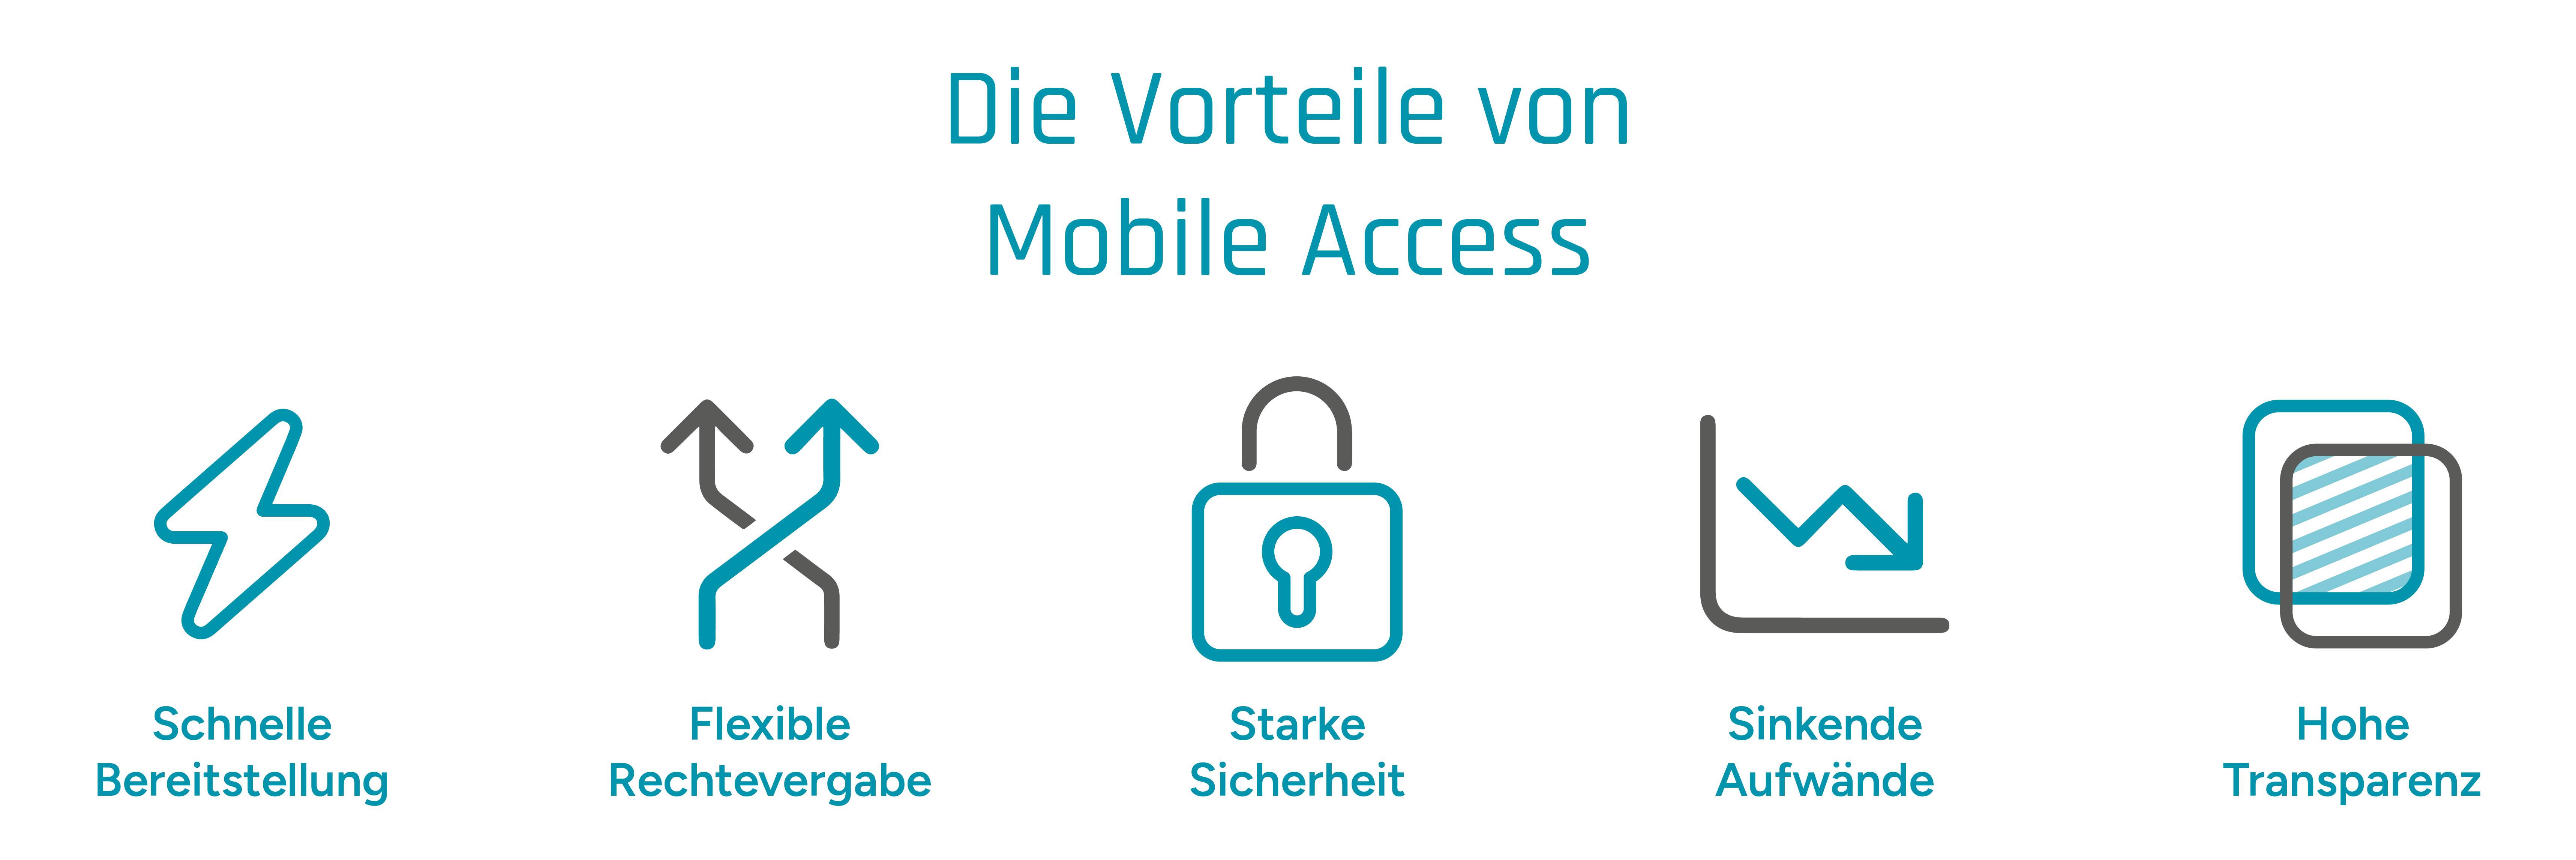 Symbolische Darstellung der Mobile-Access-Vorteile